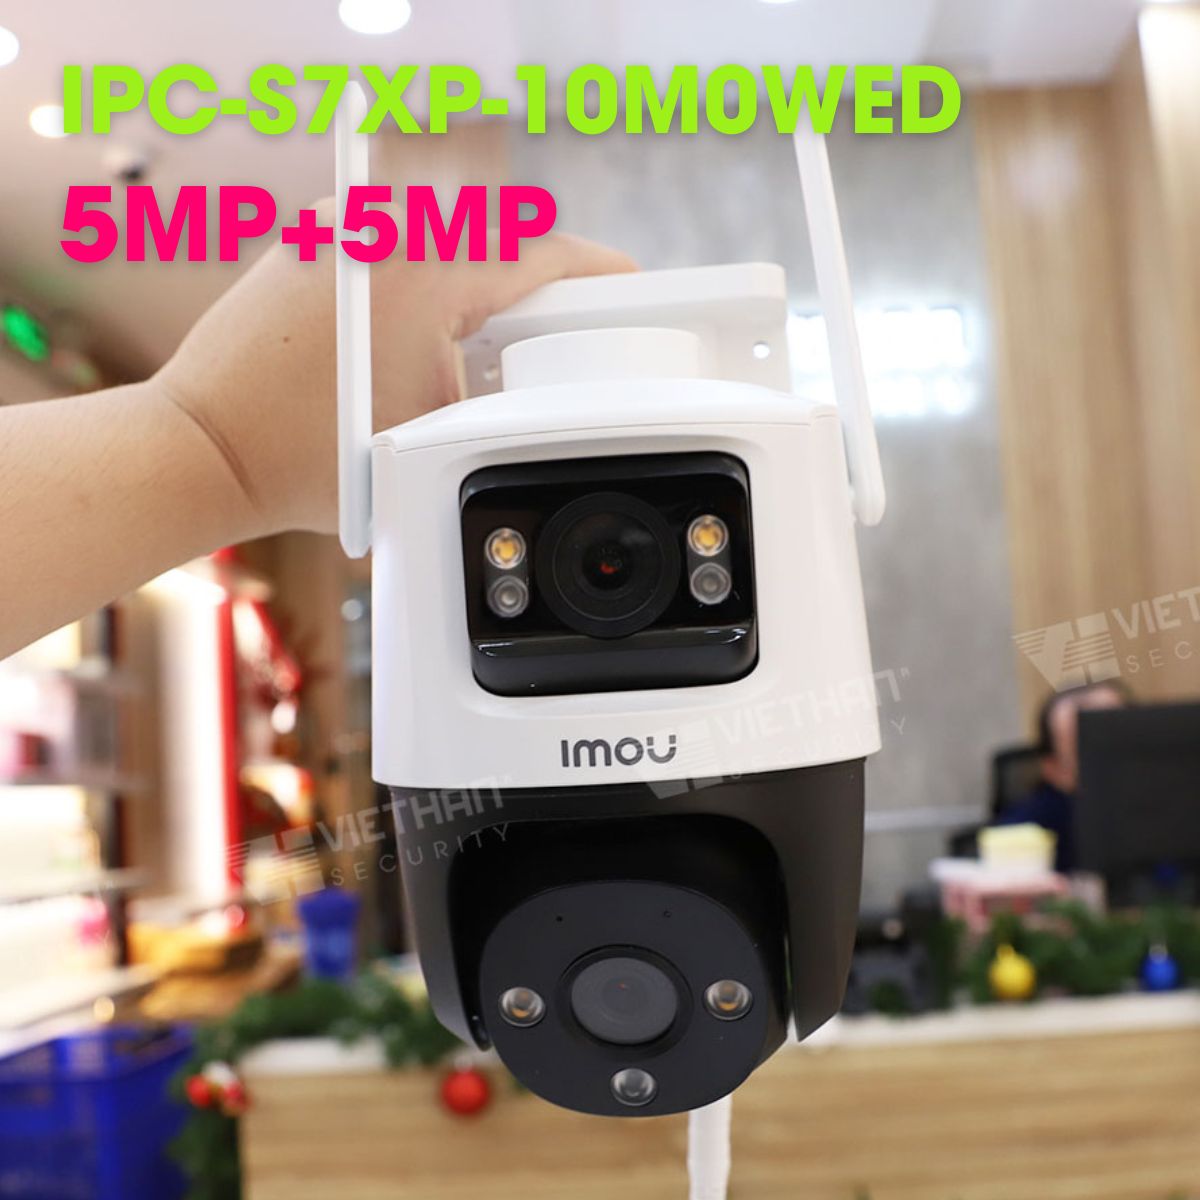 Camera 2 ống kính ngoài trời IMOU IPC-S7XP-10M0WED 5MP+5MP, hồng ngoại 30m, cảnh báo chủ động còi và đèn